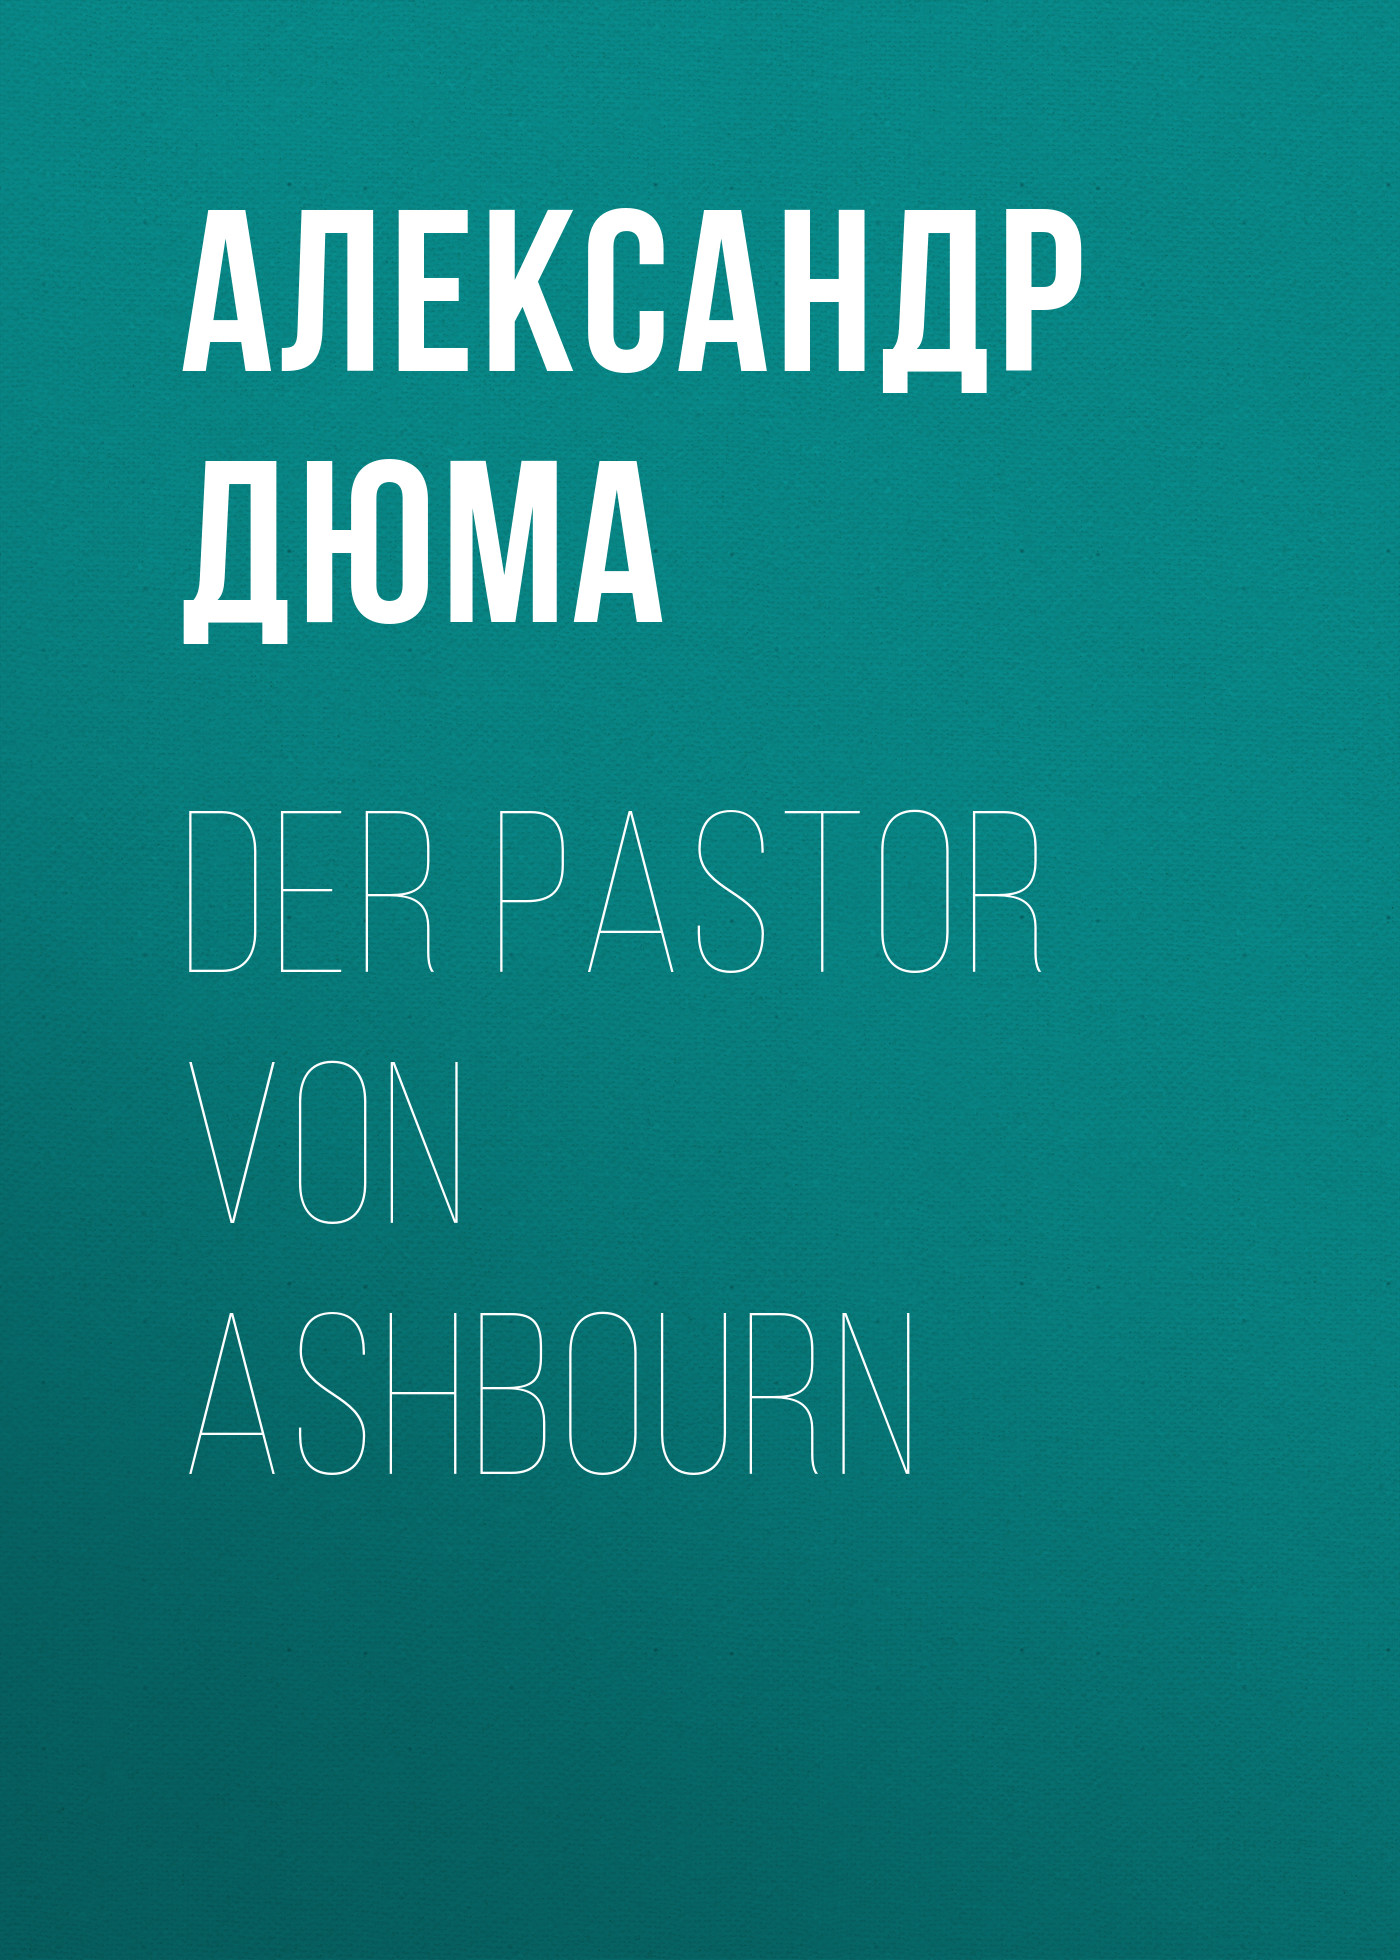 Книга Der Pastor von Ashbourn из серии , созданная Alexandre Dumas der Ältere, может относится к жанру Зарубежная классика. Стоимость электронной книги Der Pastor von Ashbourn с идентификатором 48632484 составляет 0 руб.